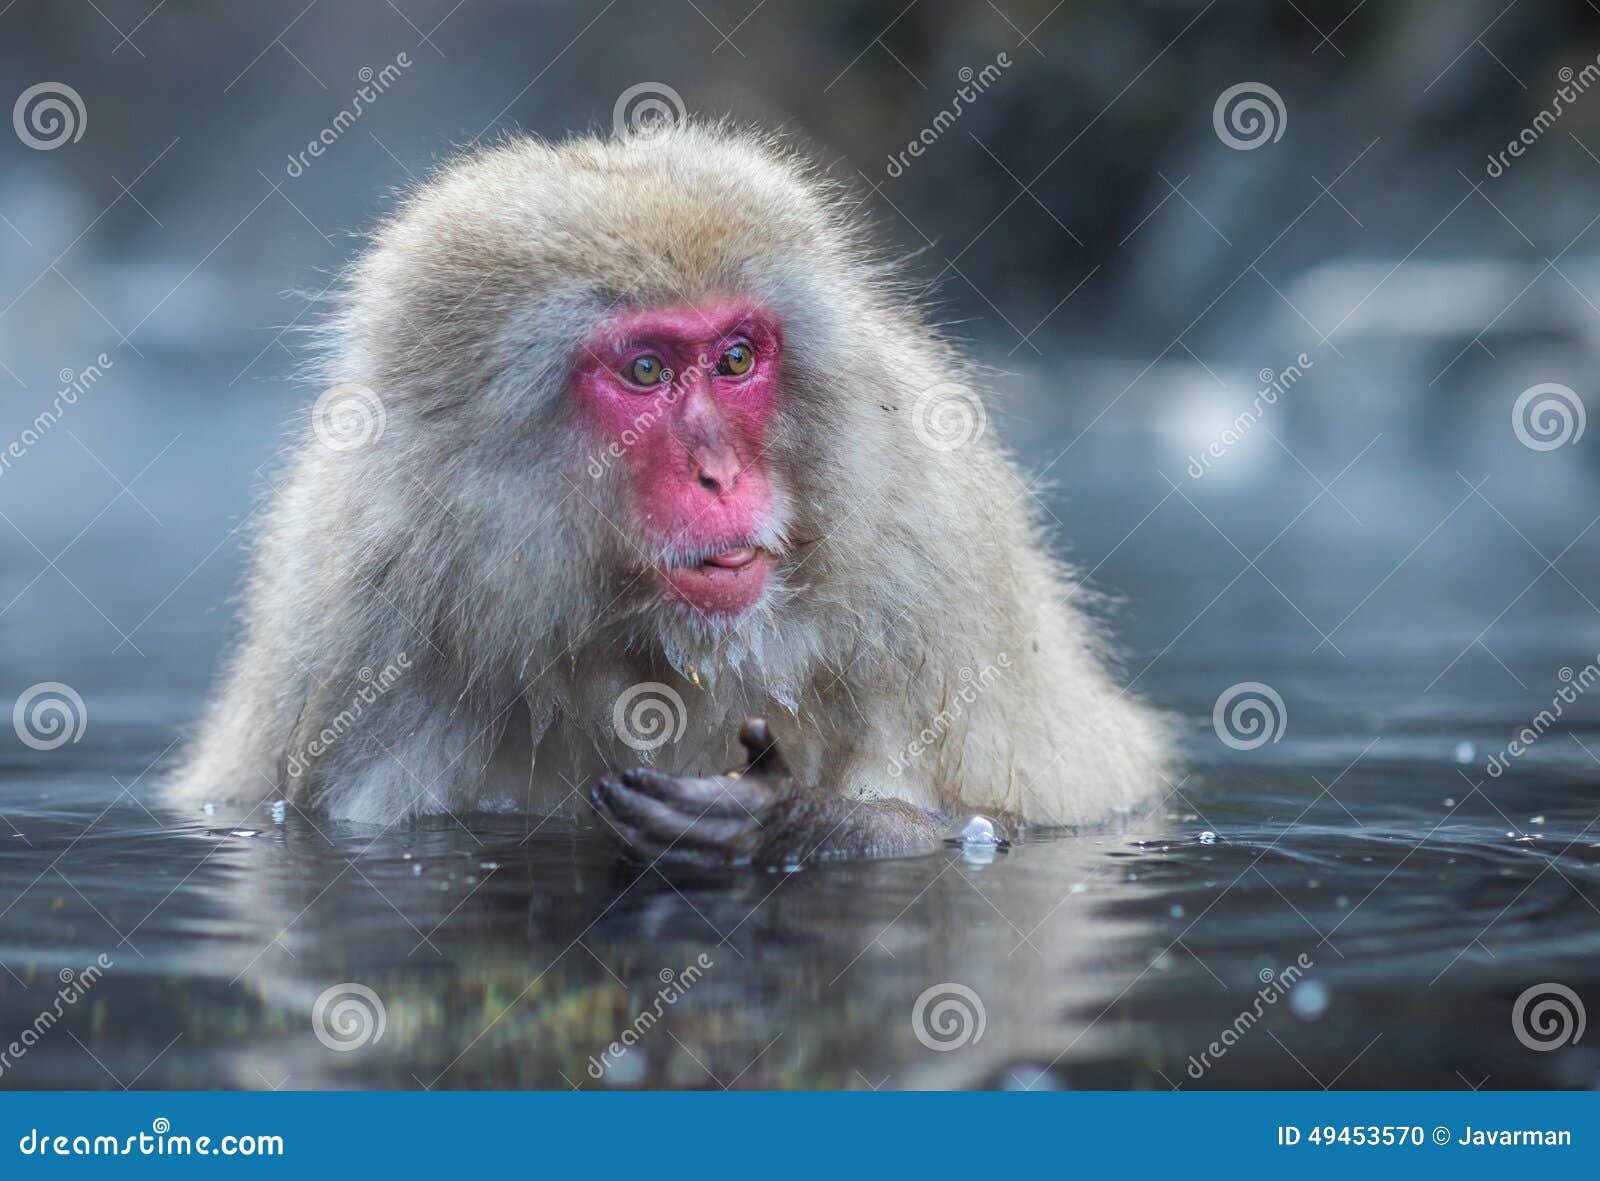 Mono De La Nieve El Macaque Japonés, También Conocido Como El Mono De La  Nieve Imagen de archivo - Imagen de animales, japonés: 111989025